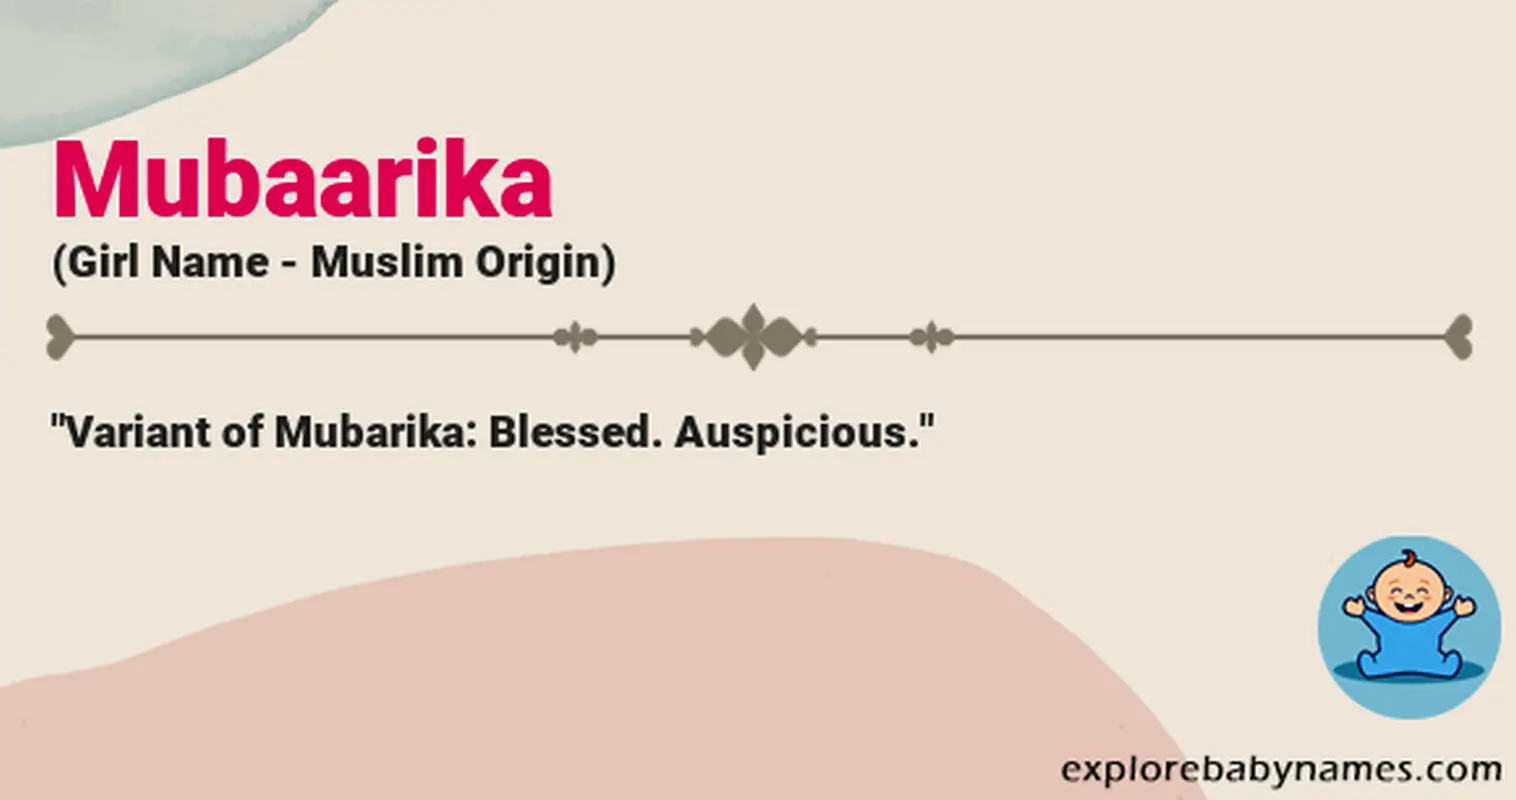 Meaning of Mubaarika